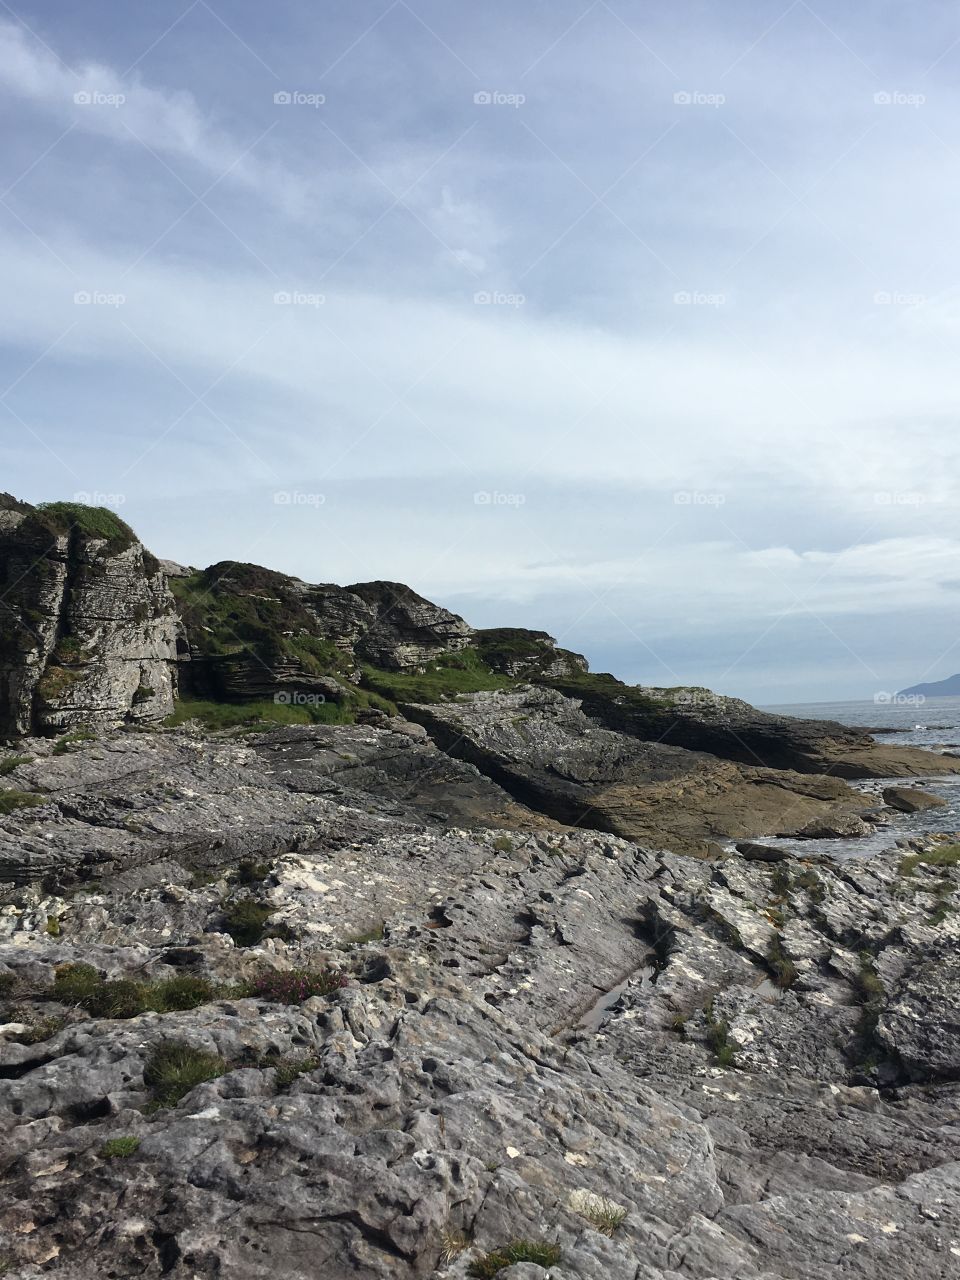 Hiking on the Isle of Skye